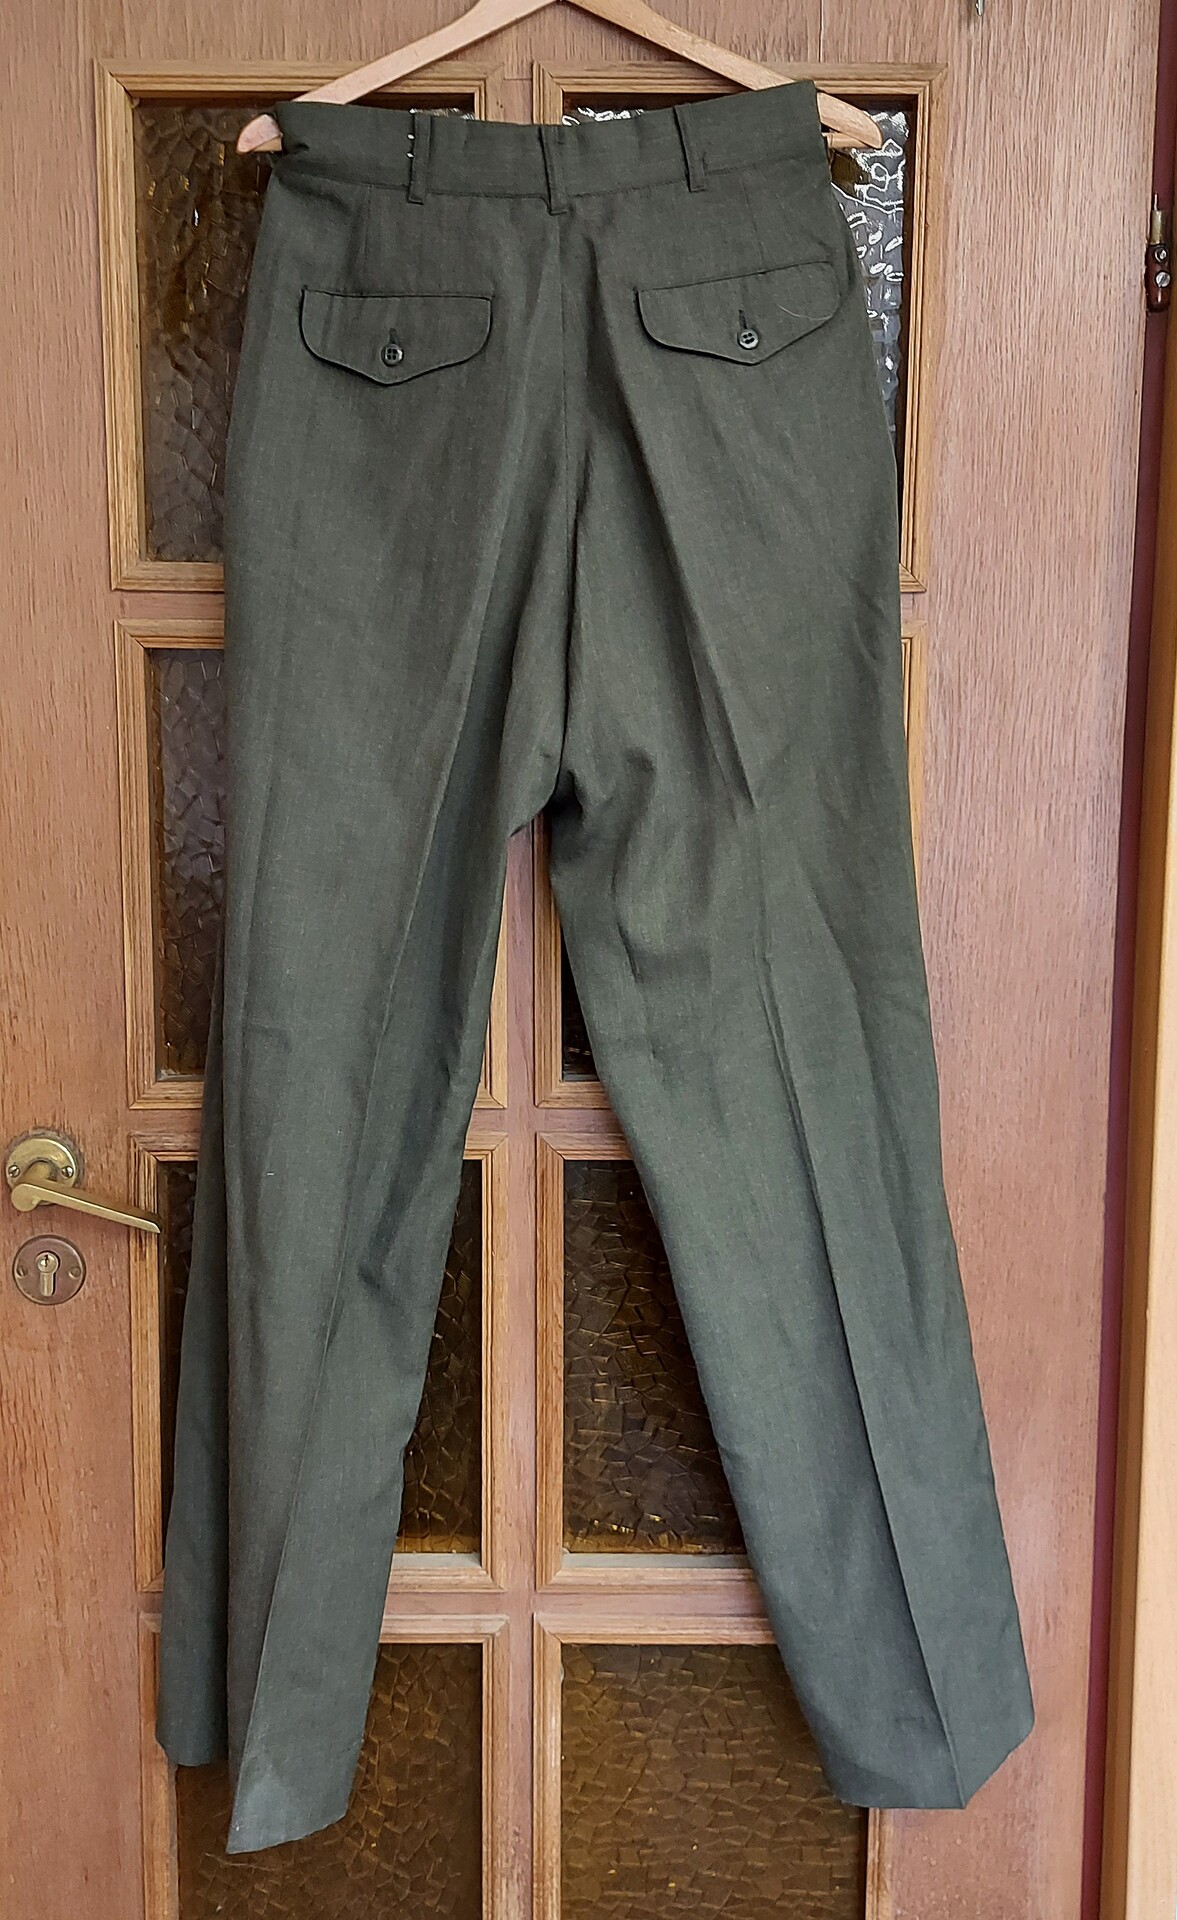 Spodnie Munduru wyjsciowego USMC - Zielone - 31L